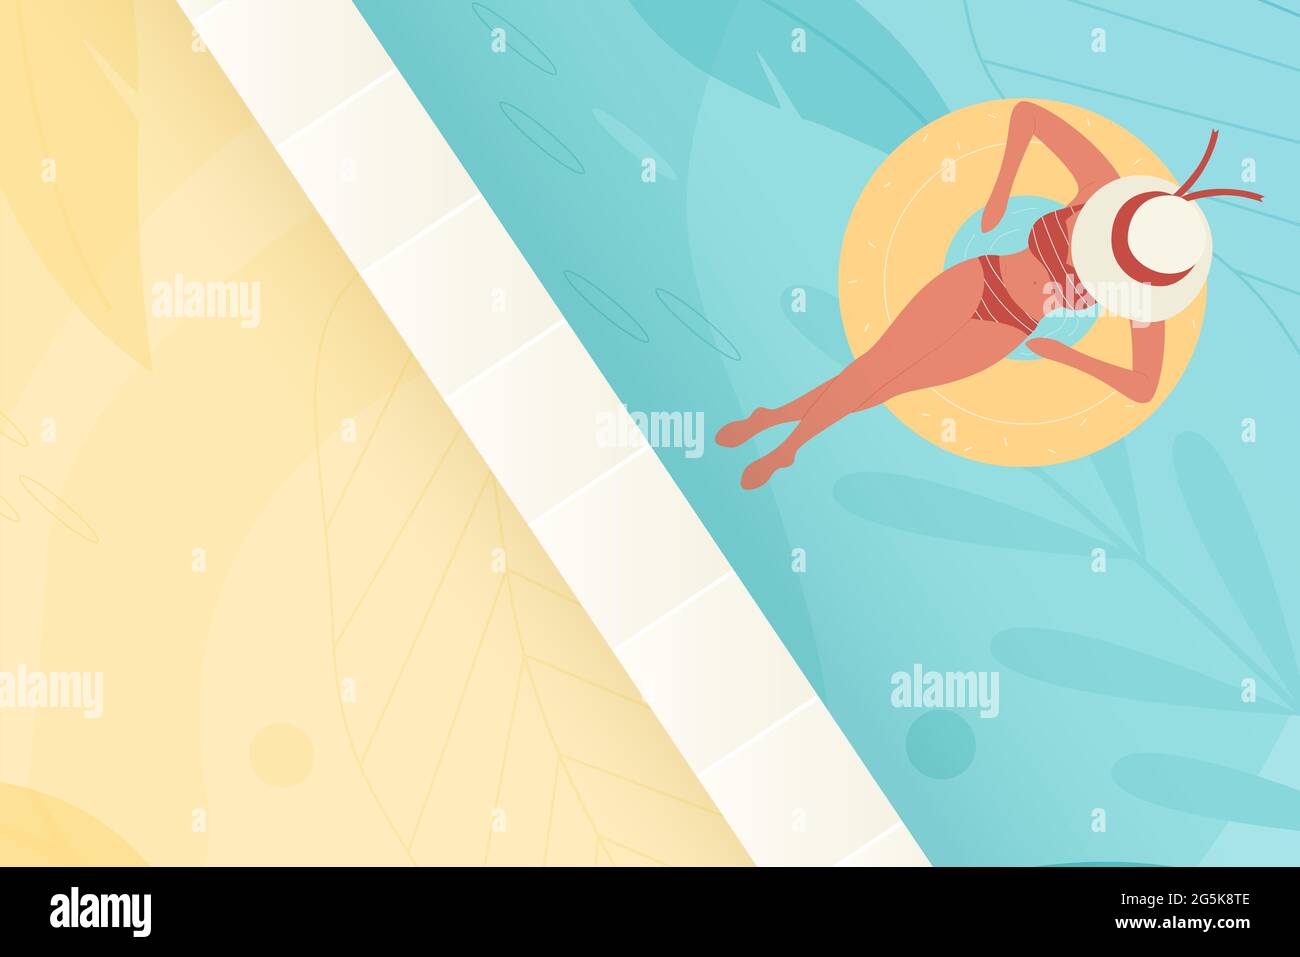 Schwimmbad blaues Wasser mit Mädchen, Sommerurlaub Vektor-Illustration. Cartoon junge Frau Schwimmer Charakter in Bikini Badeanzug und Hut schwimmt auf Gummiring Sommerzeit Draufsicht Hintergrund Stock Vektor